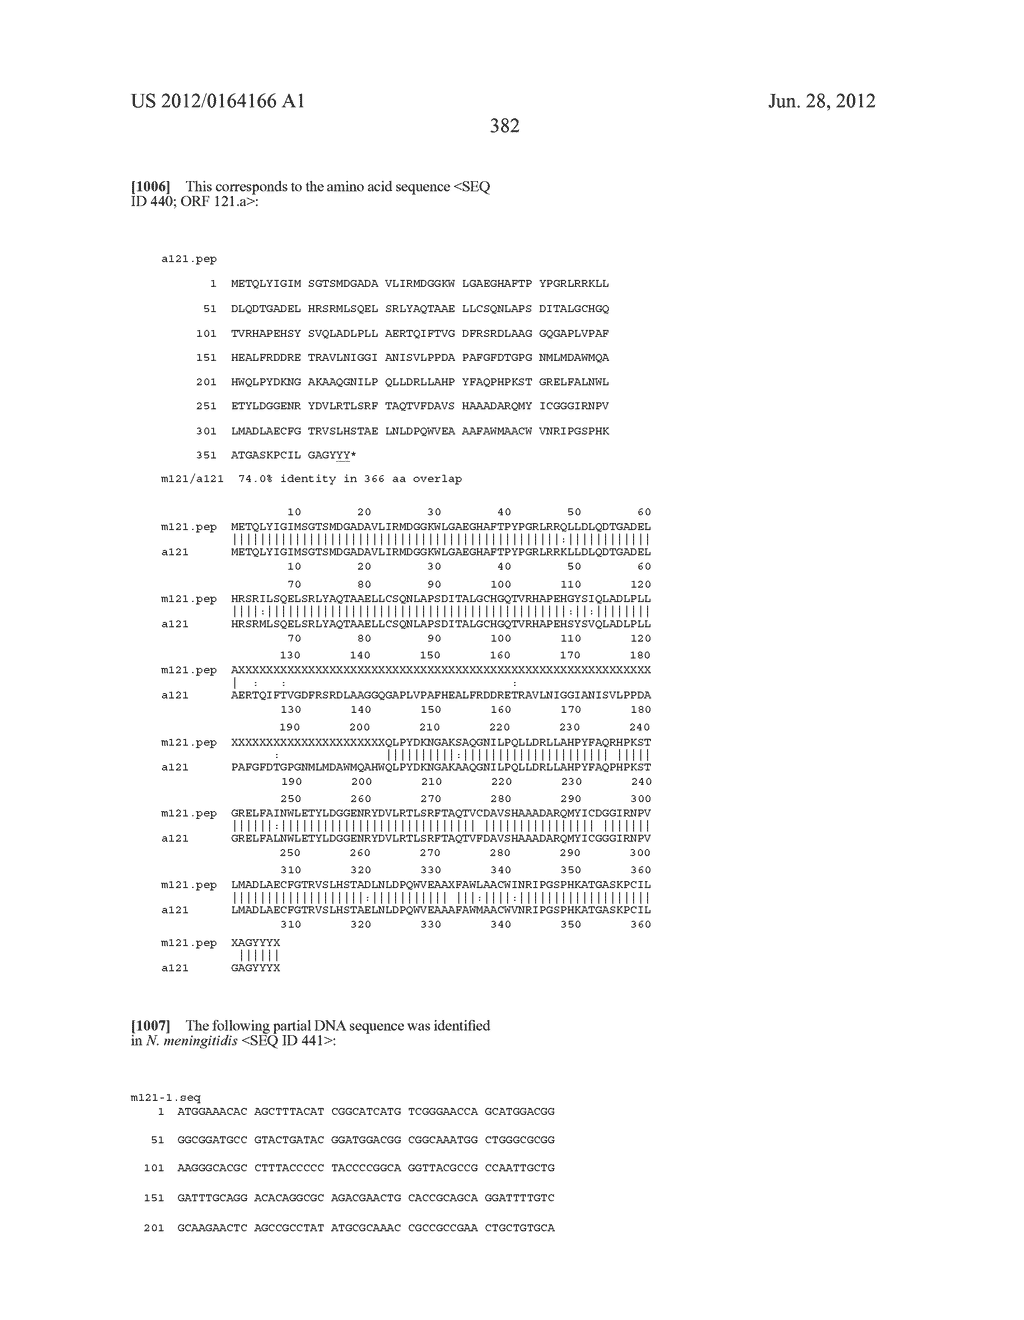 NEISSERIA MENINGITIDIS ANTIGENS AND COMPOSITIONS - diagram, schematic, and image 414